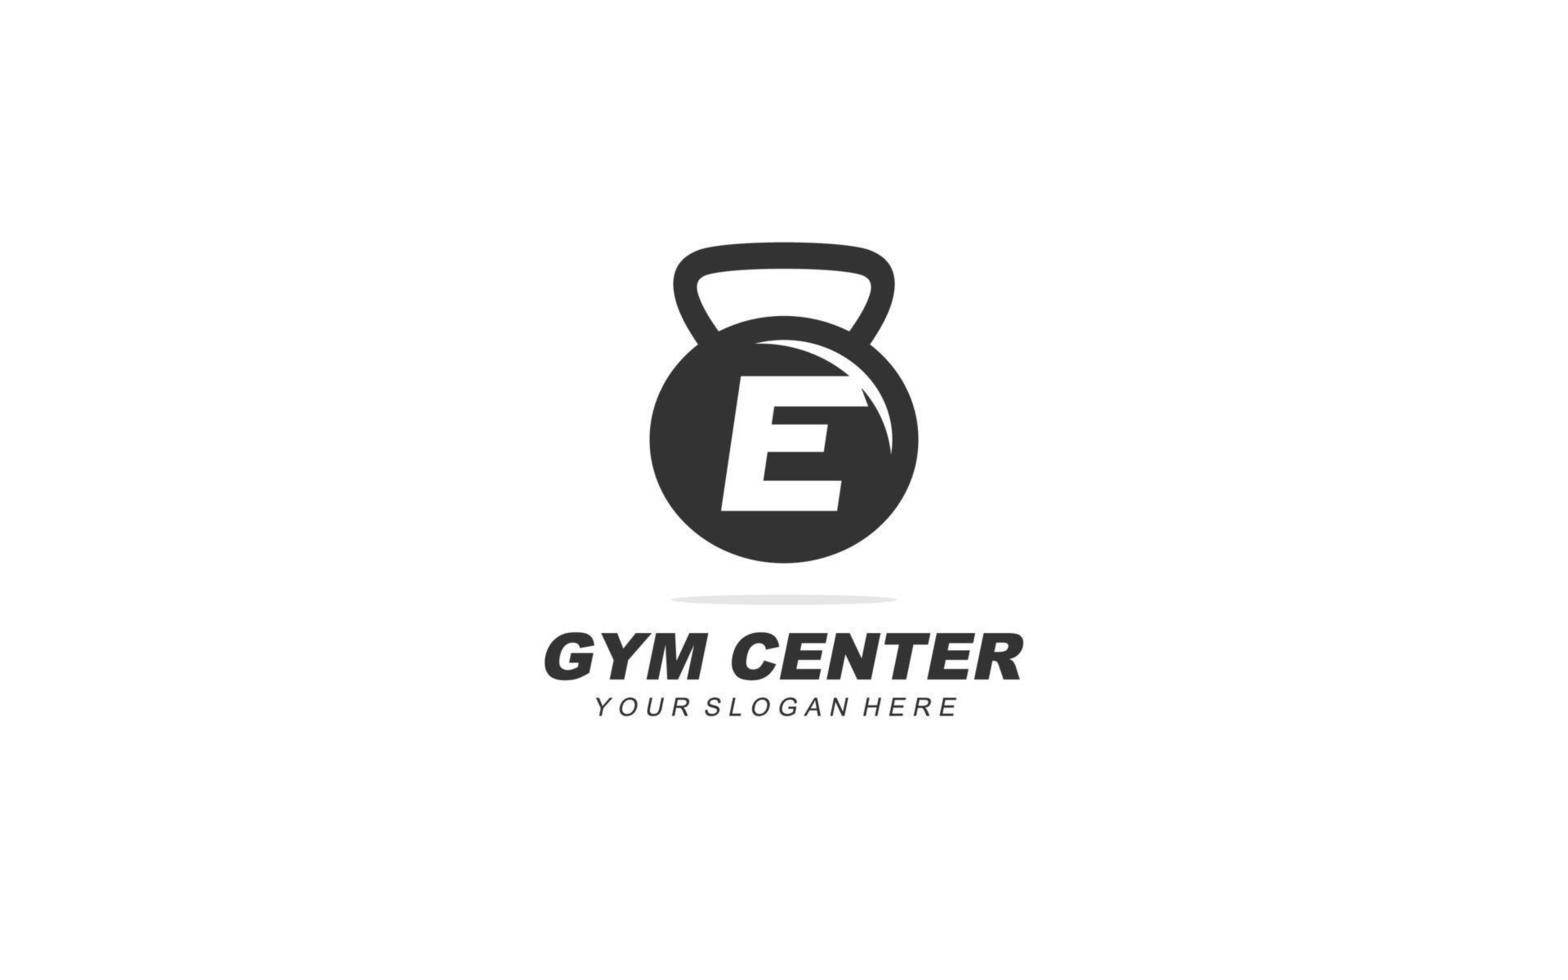 e Gym logotyp design inspiration. vektor brev mall design för varumärke.